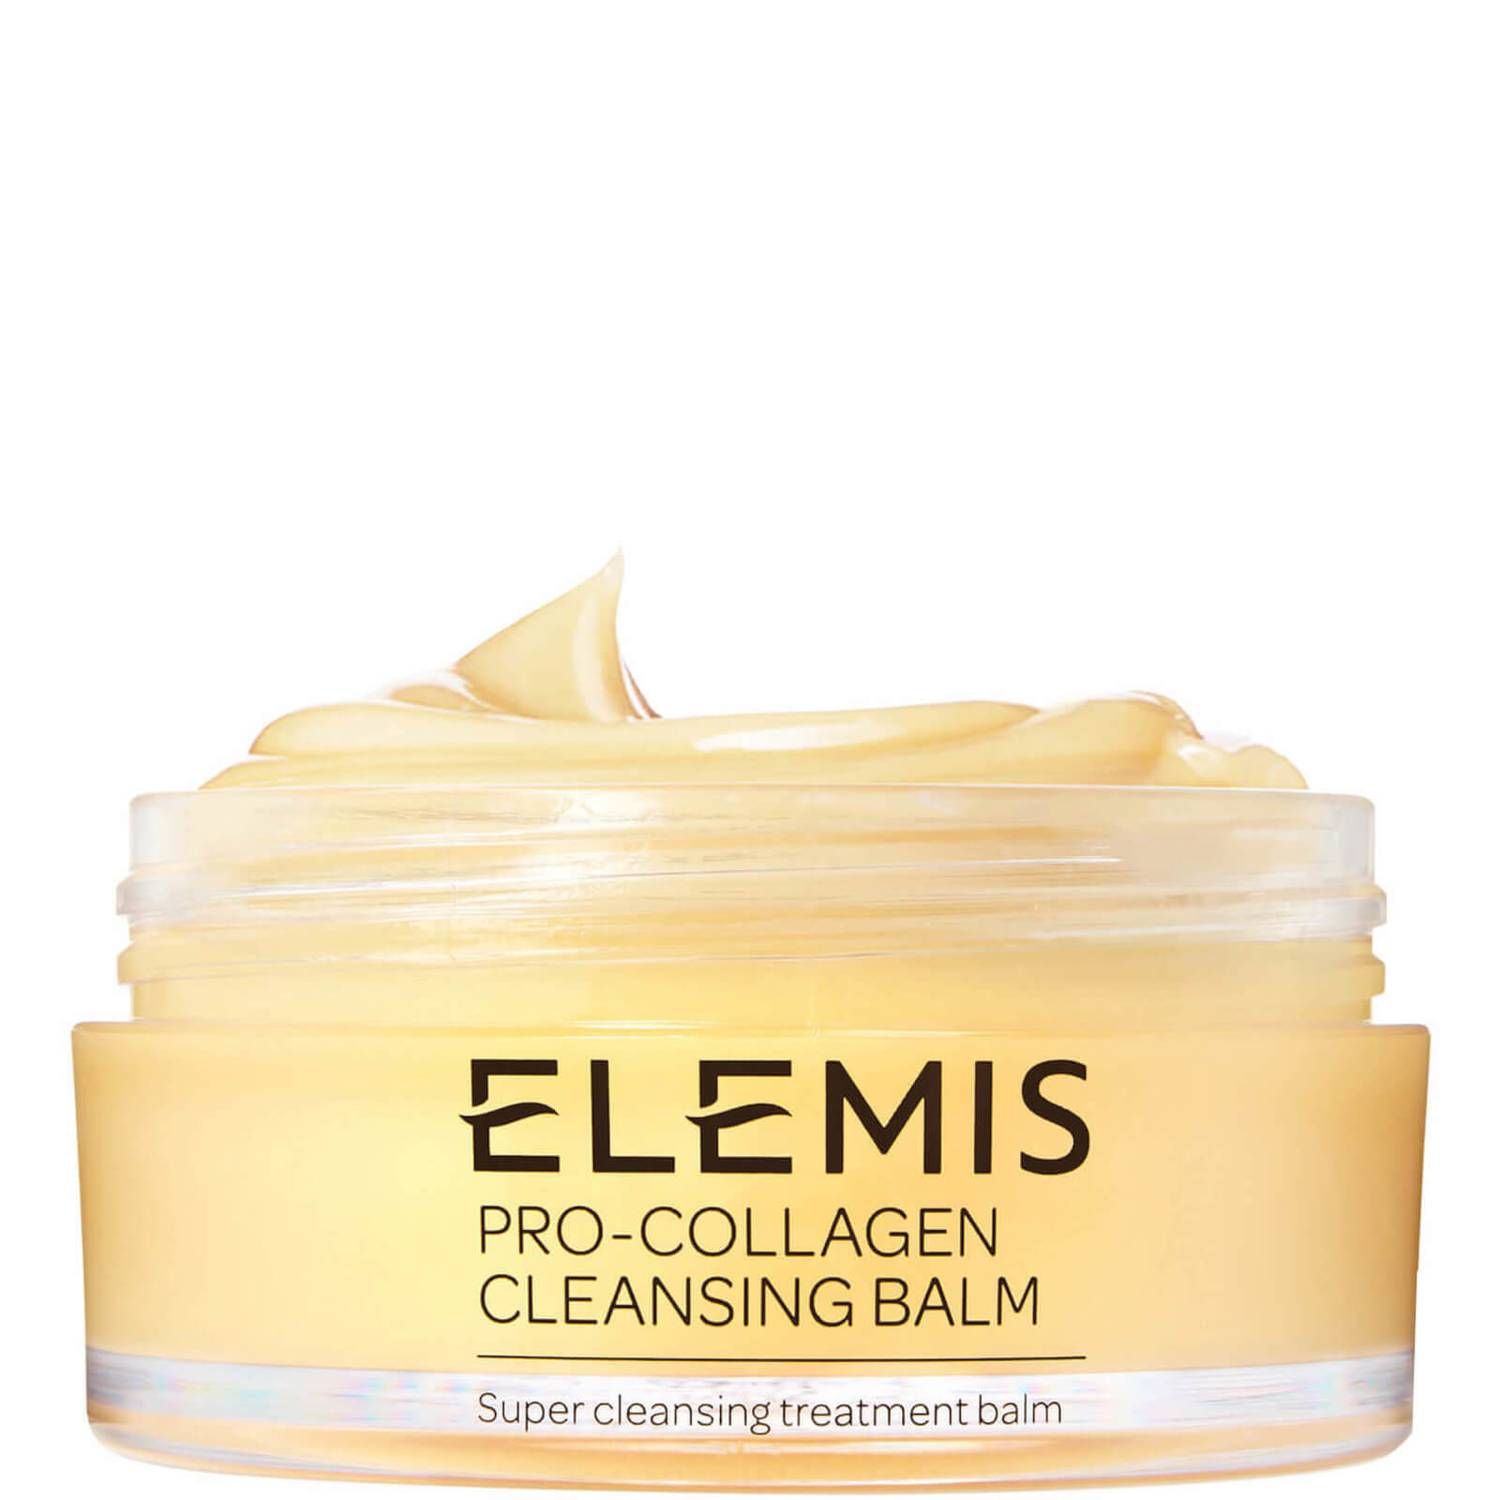 Elemis Pro-Collagen Cleansing Balm 100g | Dermstore (US)